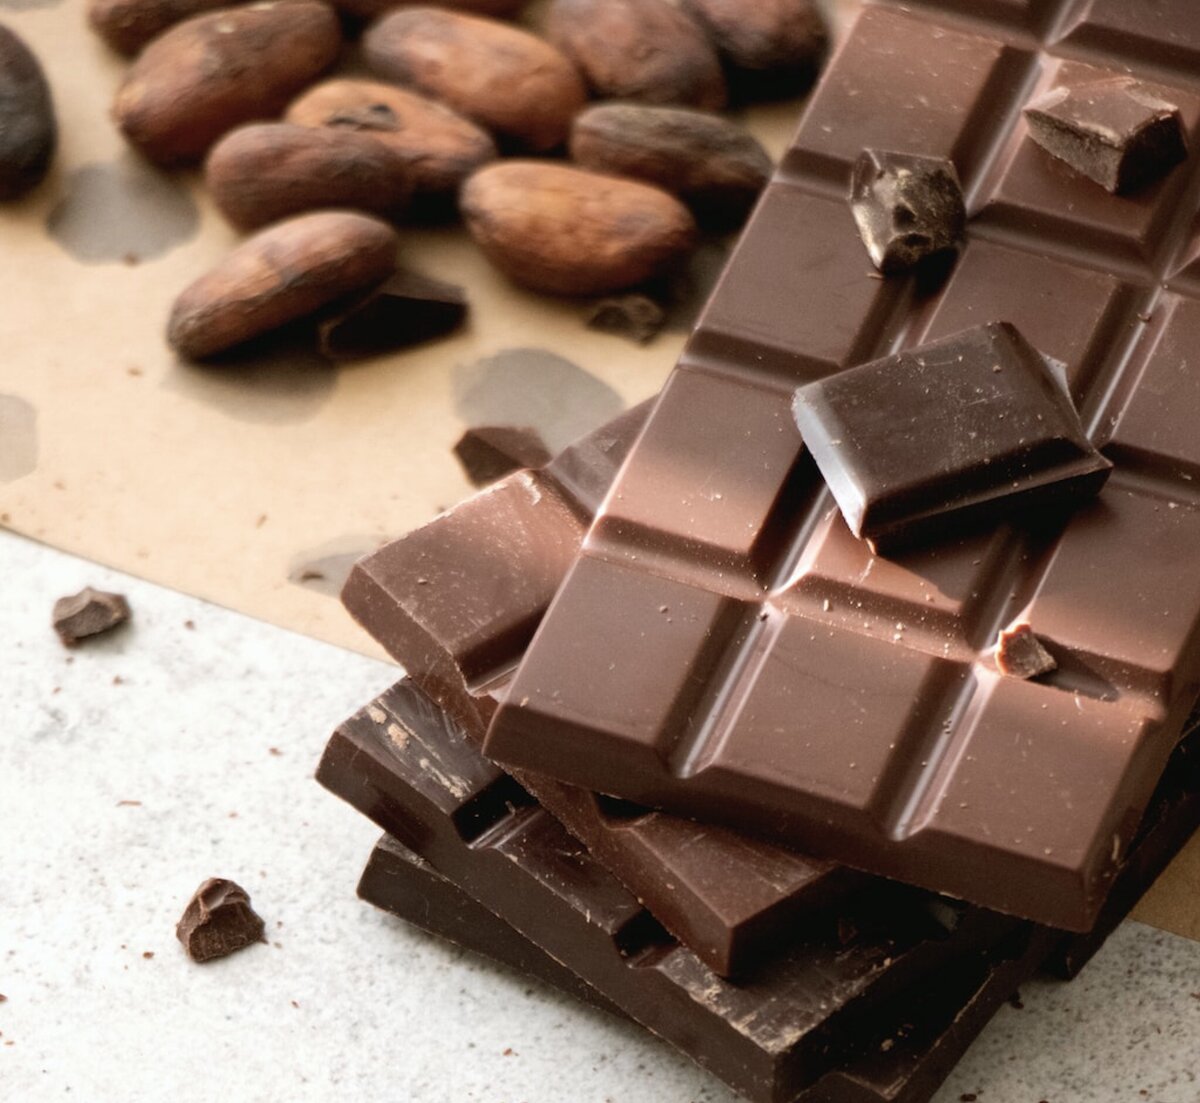 Можно ли приготовить шоколад дома?